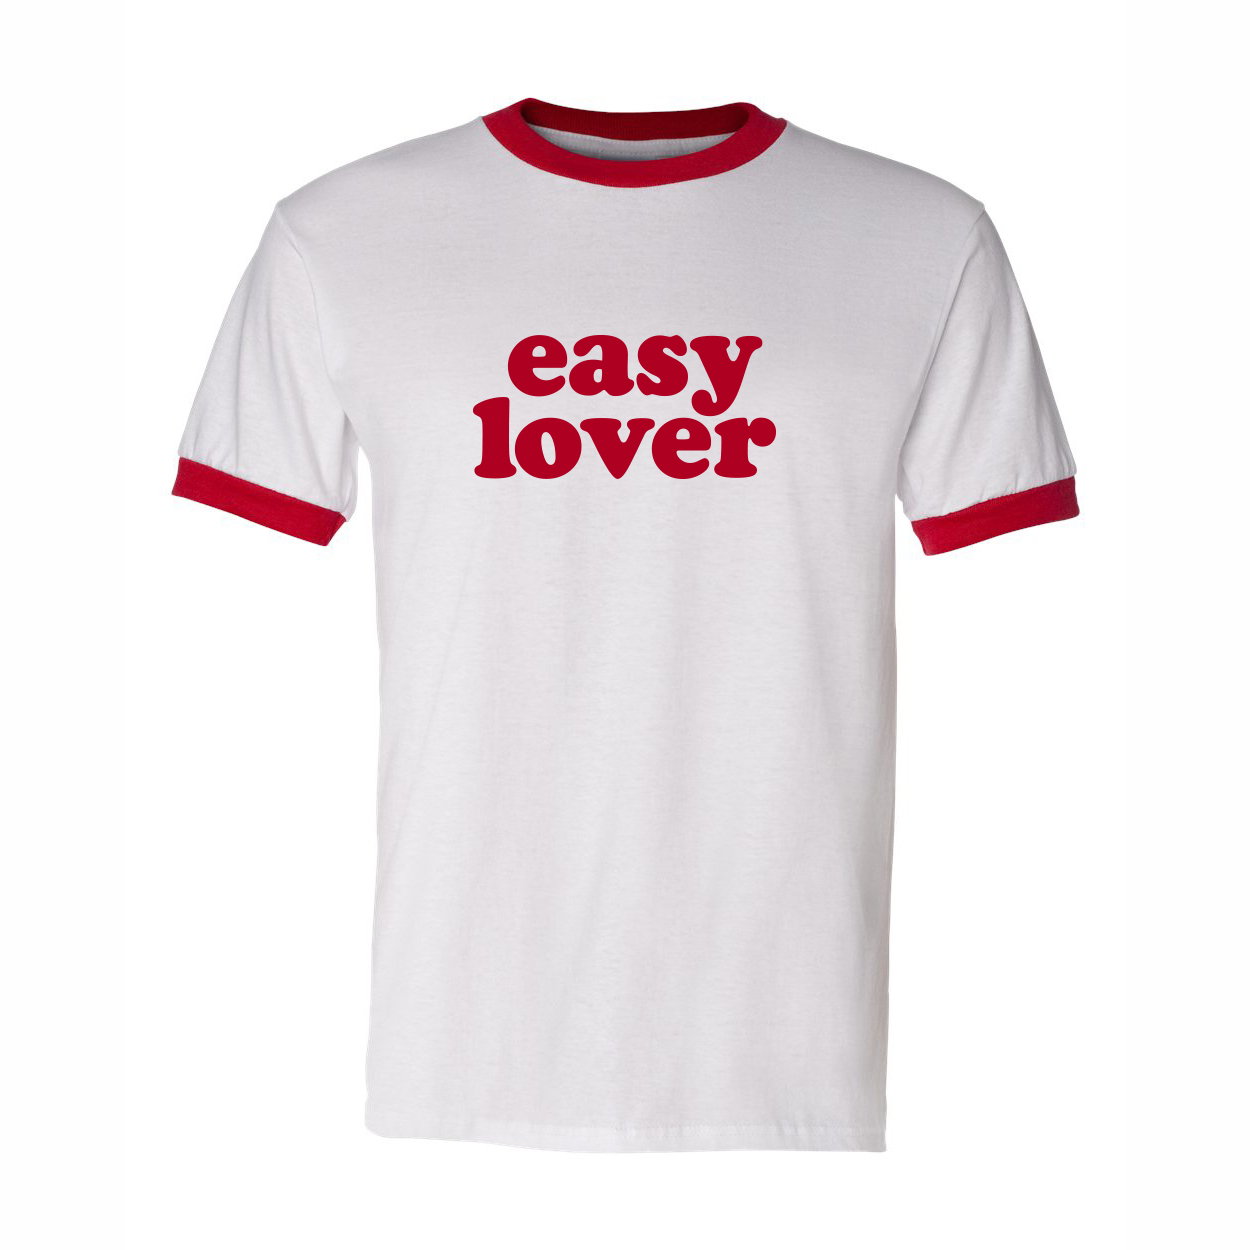 Kommerz mit Herz T-Shirt "Easy Lover" (Rot) Shirt, Weiss